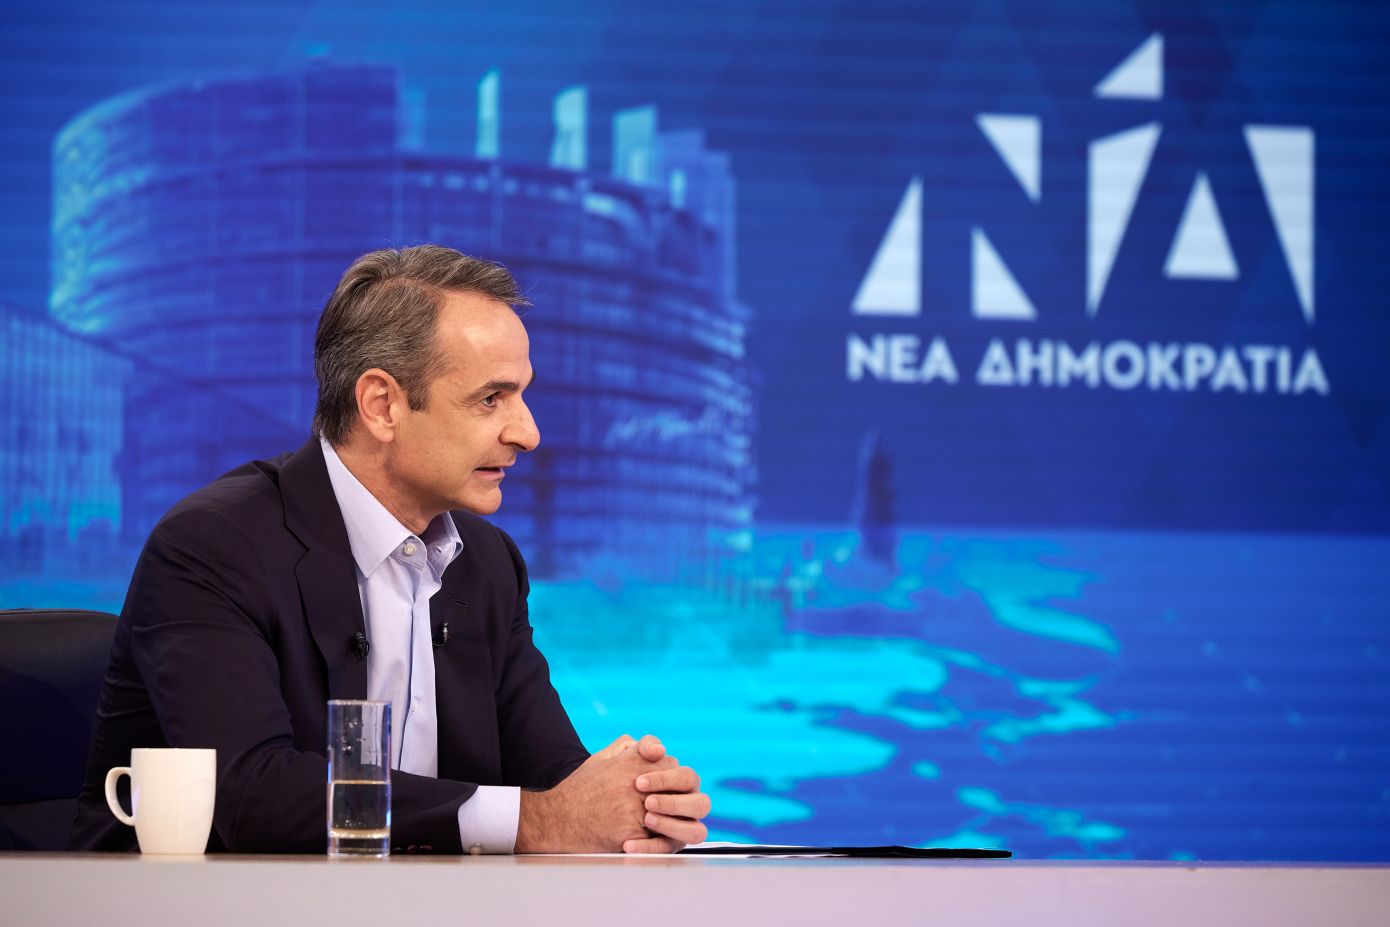 Μητσοτάκης: Με το οικονομικό πρόγραμμα του ΣΥΡΙΖΑ θα μπαίναμε αμέσως σε επιτήρηση